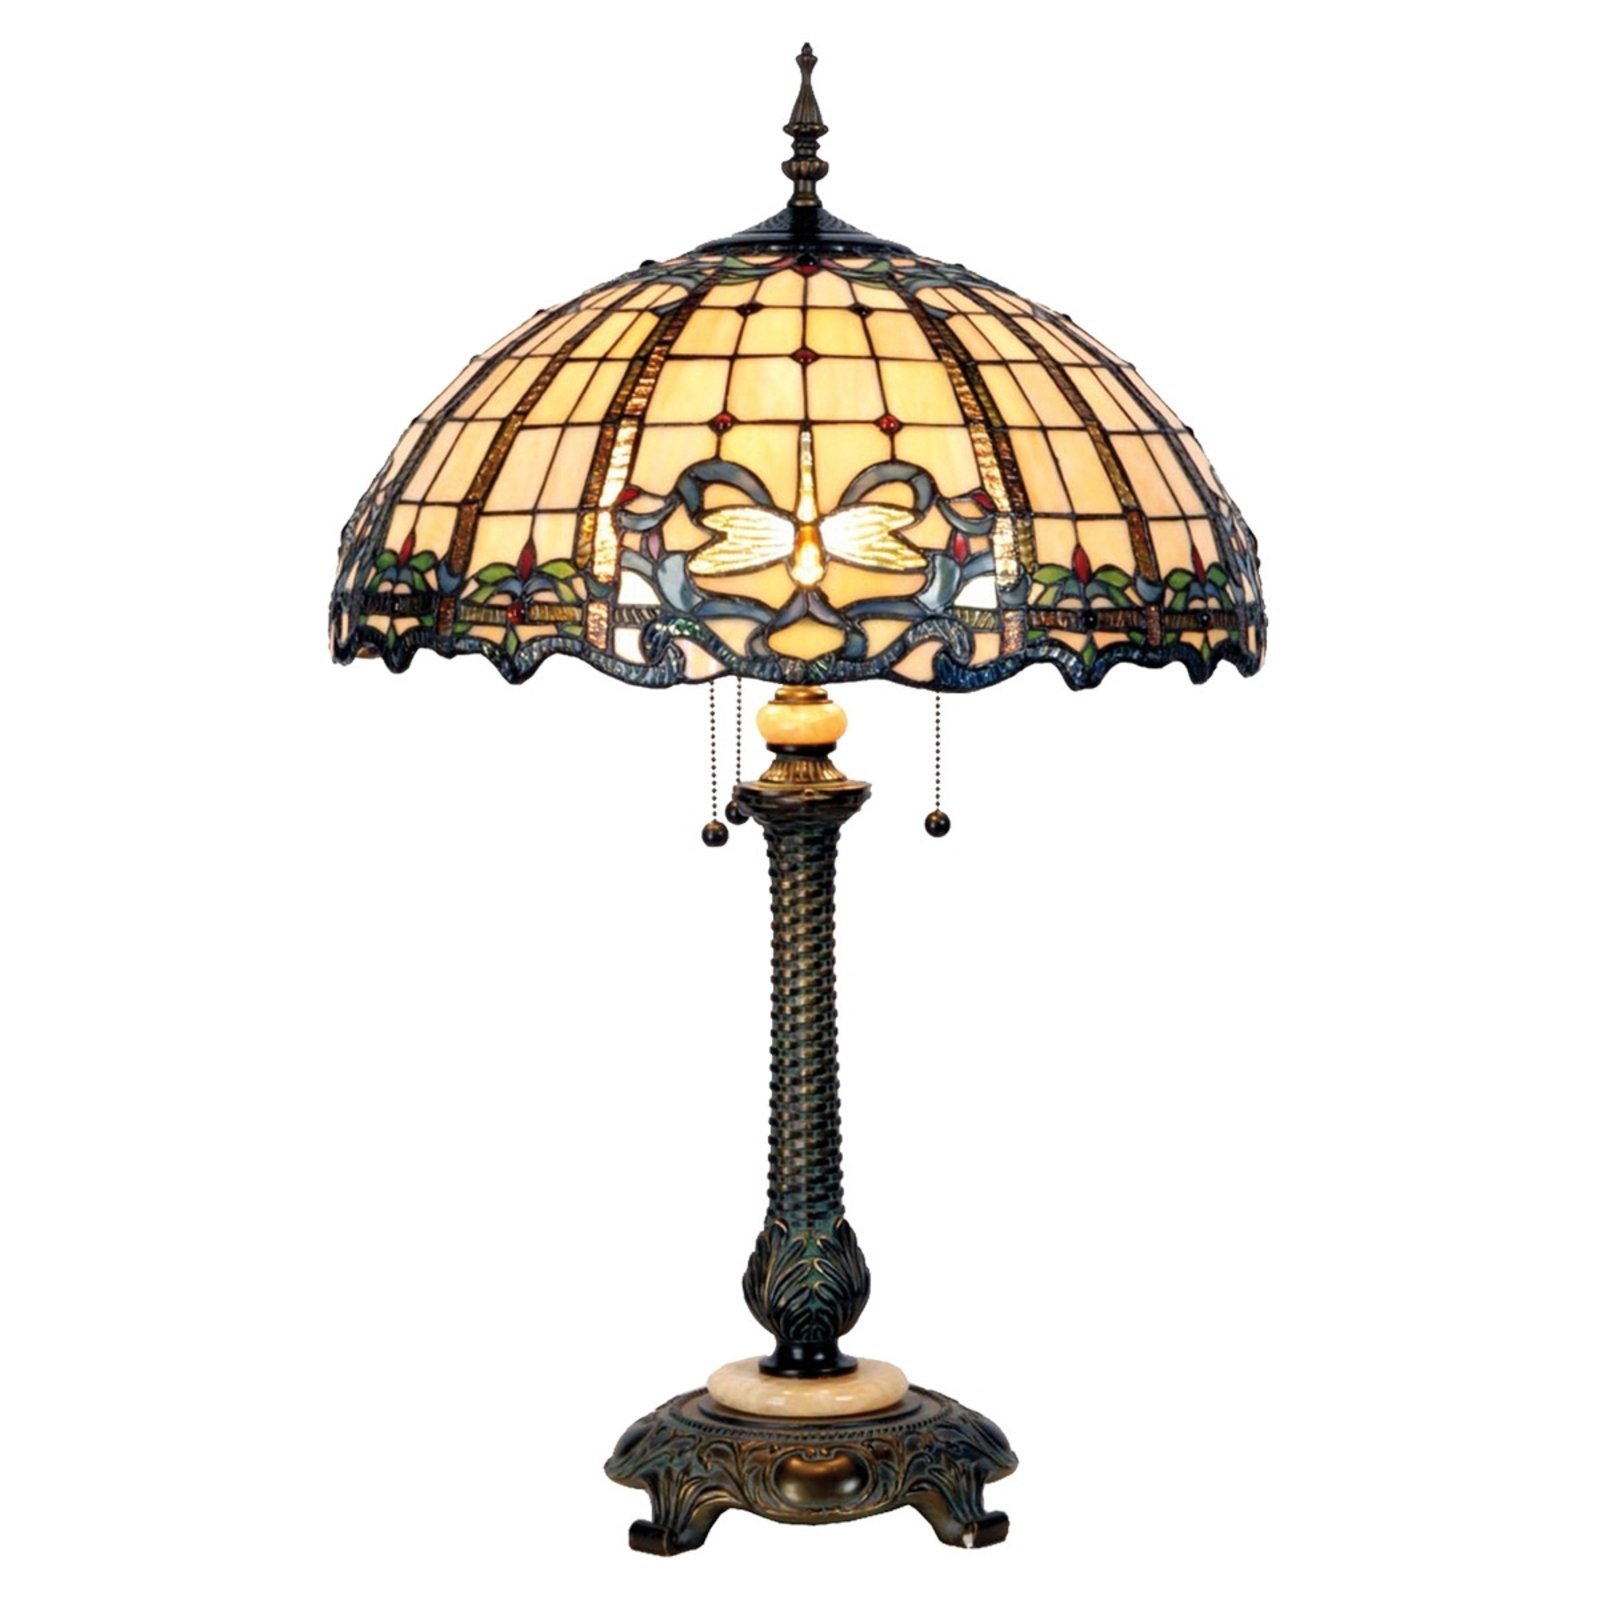 Predivna stolna lampa Atlantis, dizajn Tiffany